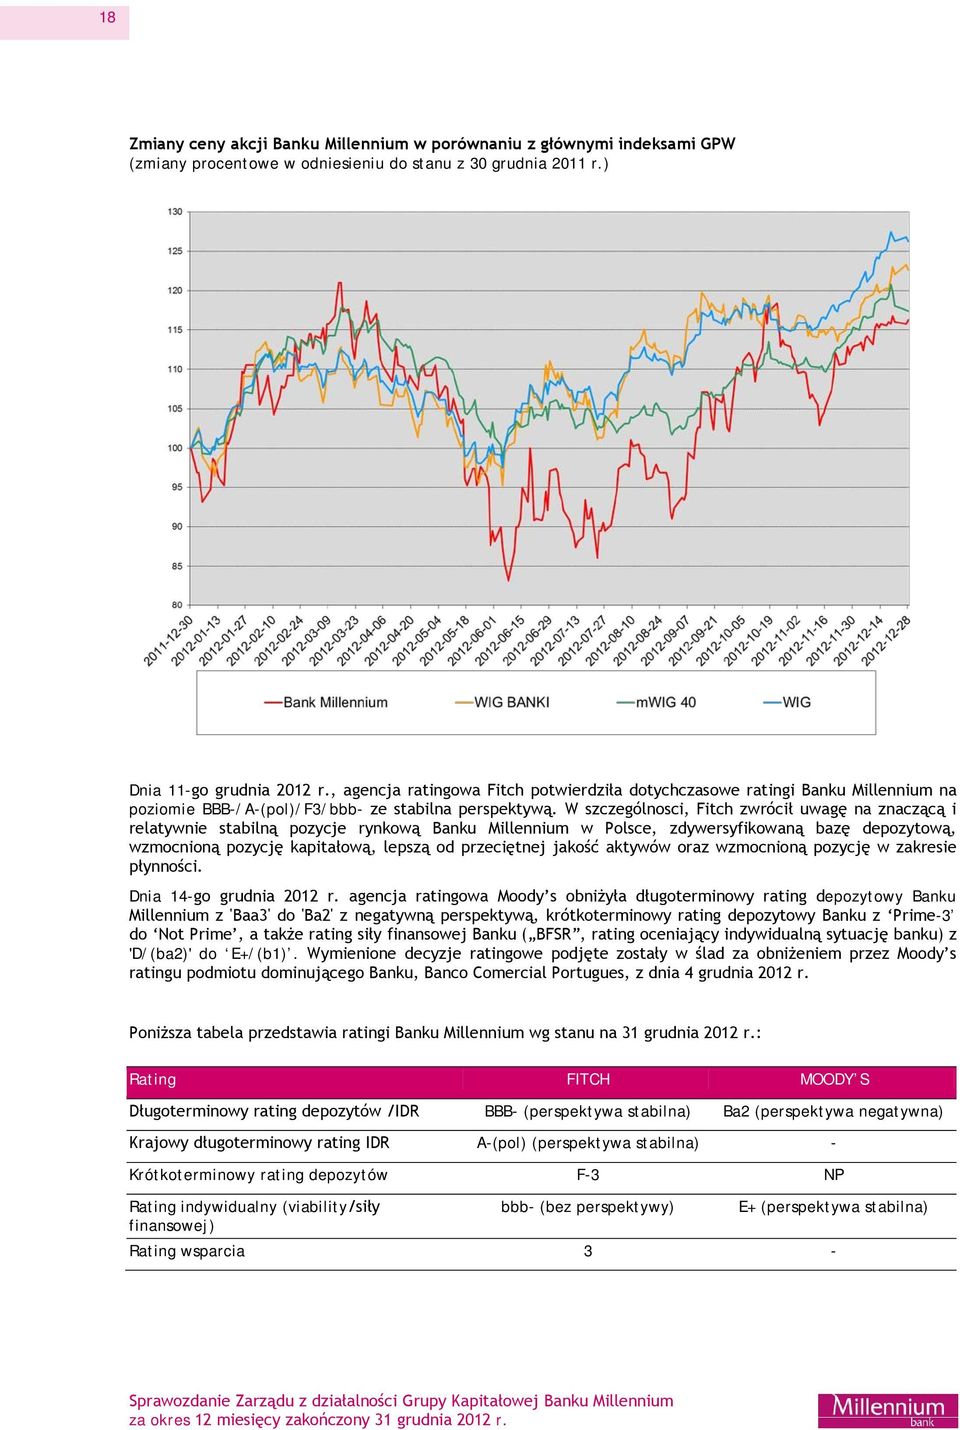 W szczególnosci, Fitch zwrócił uwagę na znaczącą i relatywnie stabilną pozycje rynkową Banku Millennium w Polsce, zdywersyfikowaną bazę depozytową, wzmocnioną pozycję kapitałową, lepszą od